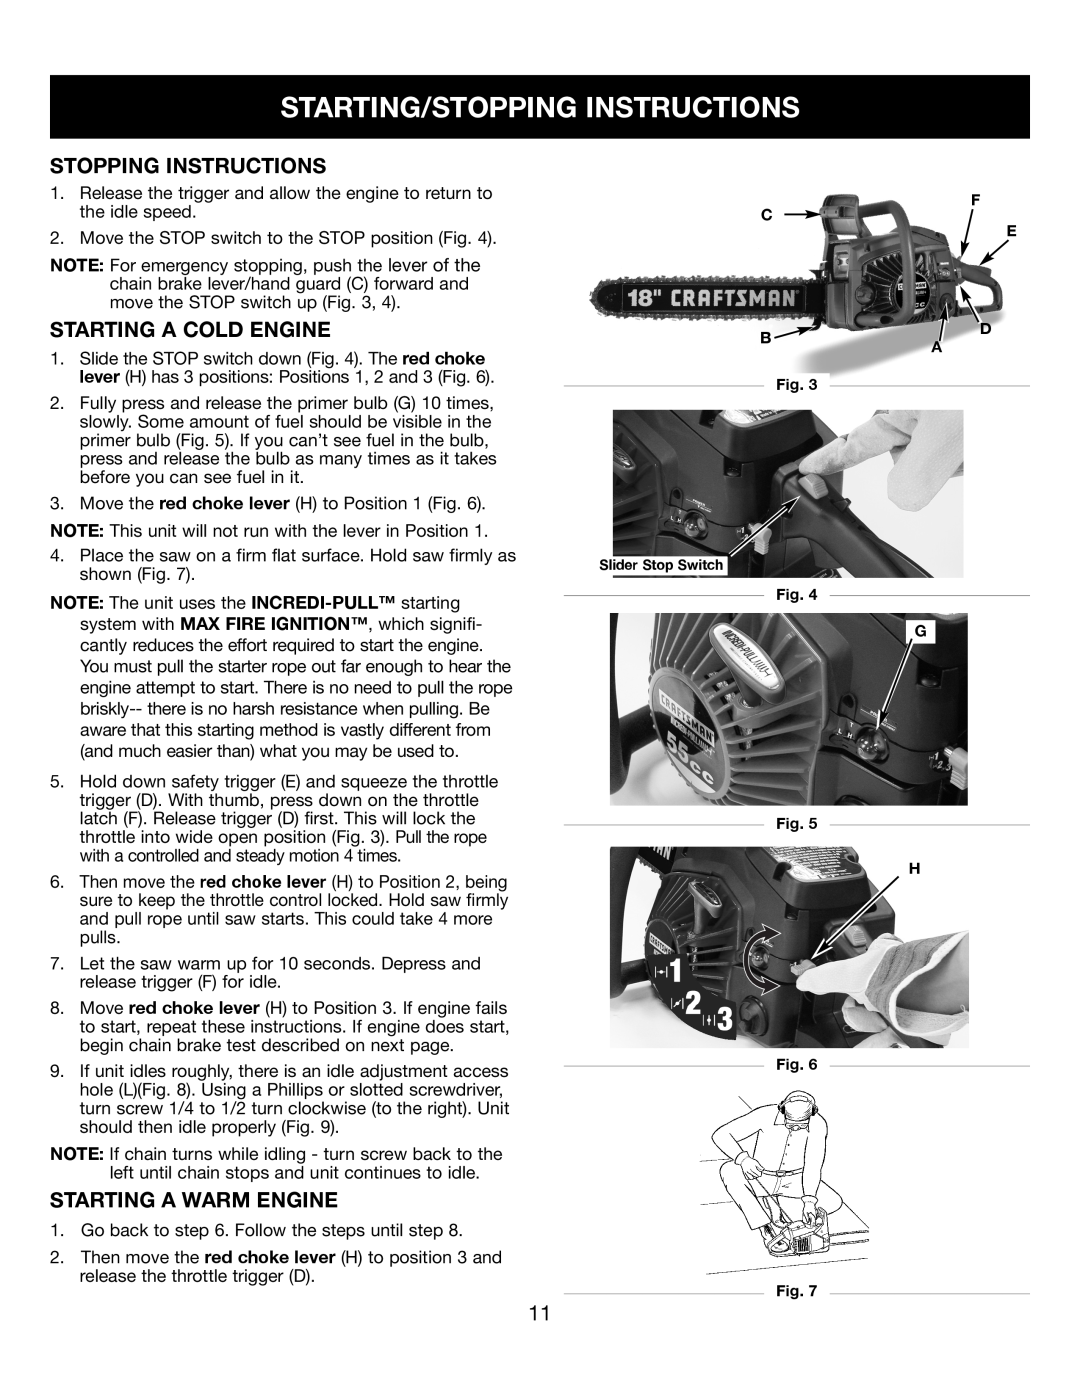 Craftsman 316350840 manual Starting/Stopping Instructions, Starting A Cold Engine, Starting A Warm Engine 